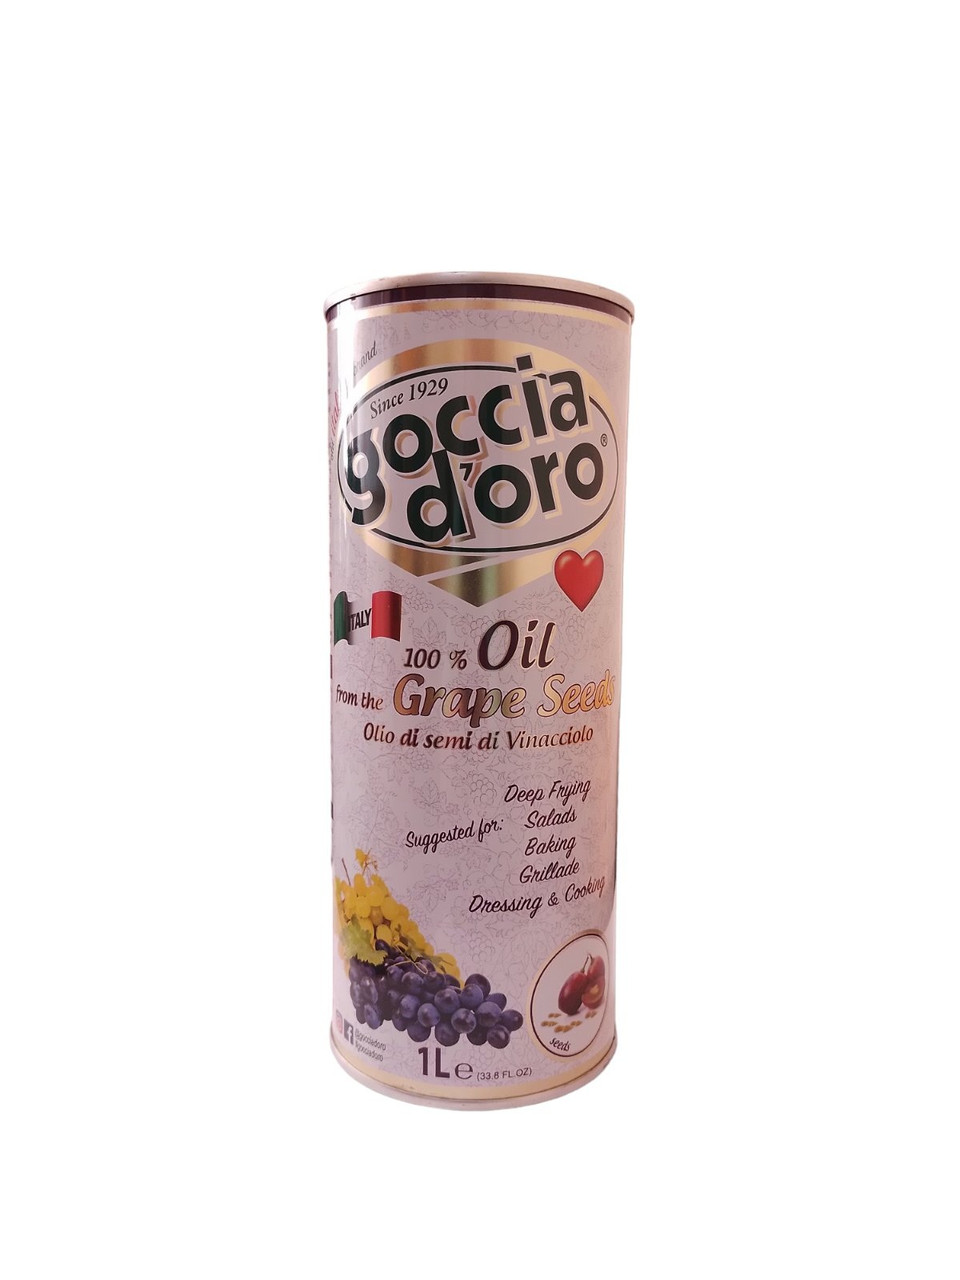 Олія виноградної кісточки Goccia d'oro - виногадна олія - 1л (ІТАЛІЯ) - ОРИГІНАЛ